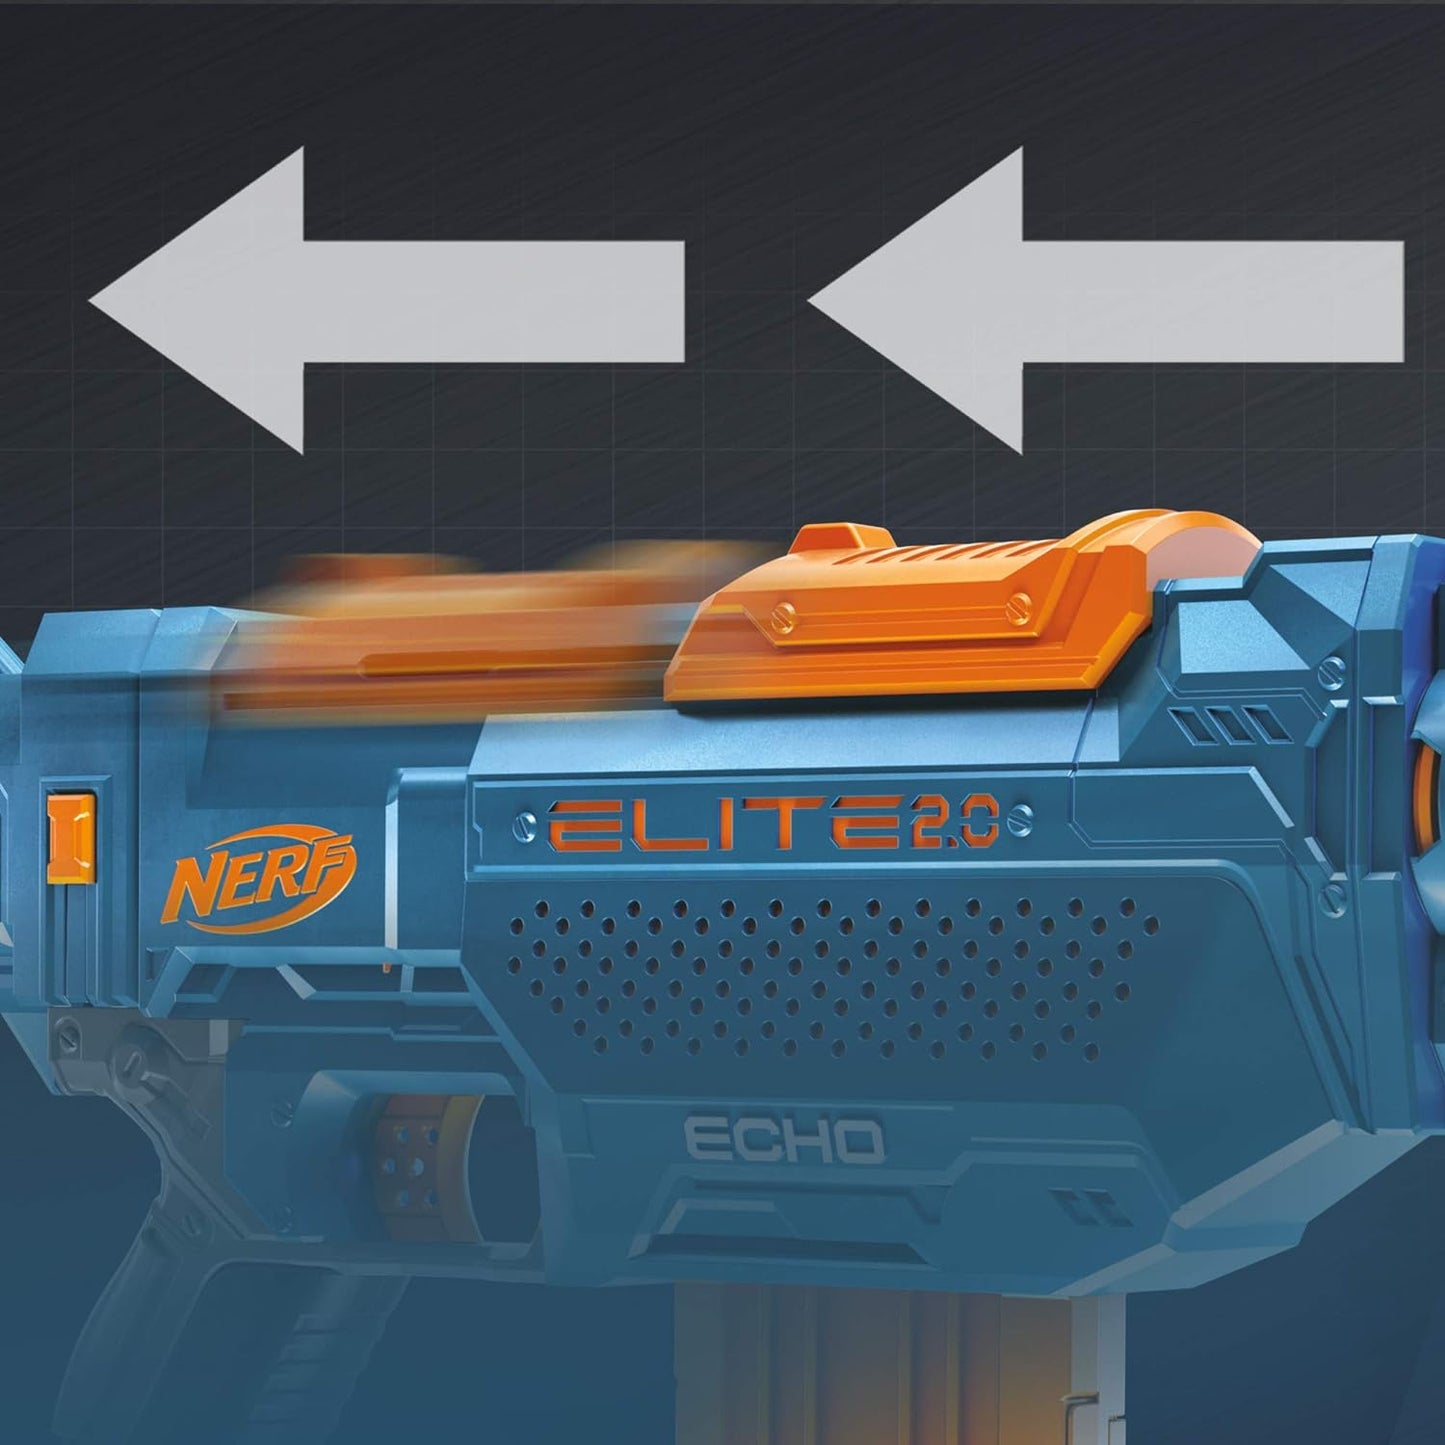 Buy NERF Elite 2.0 Echo CS-10 Toy Blaster, Online India - MM TOYS